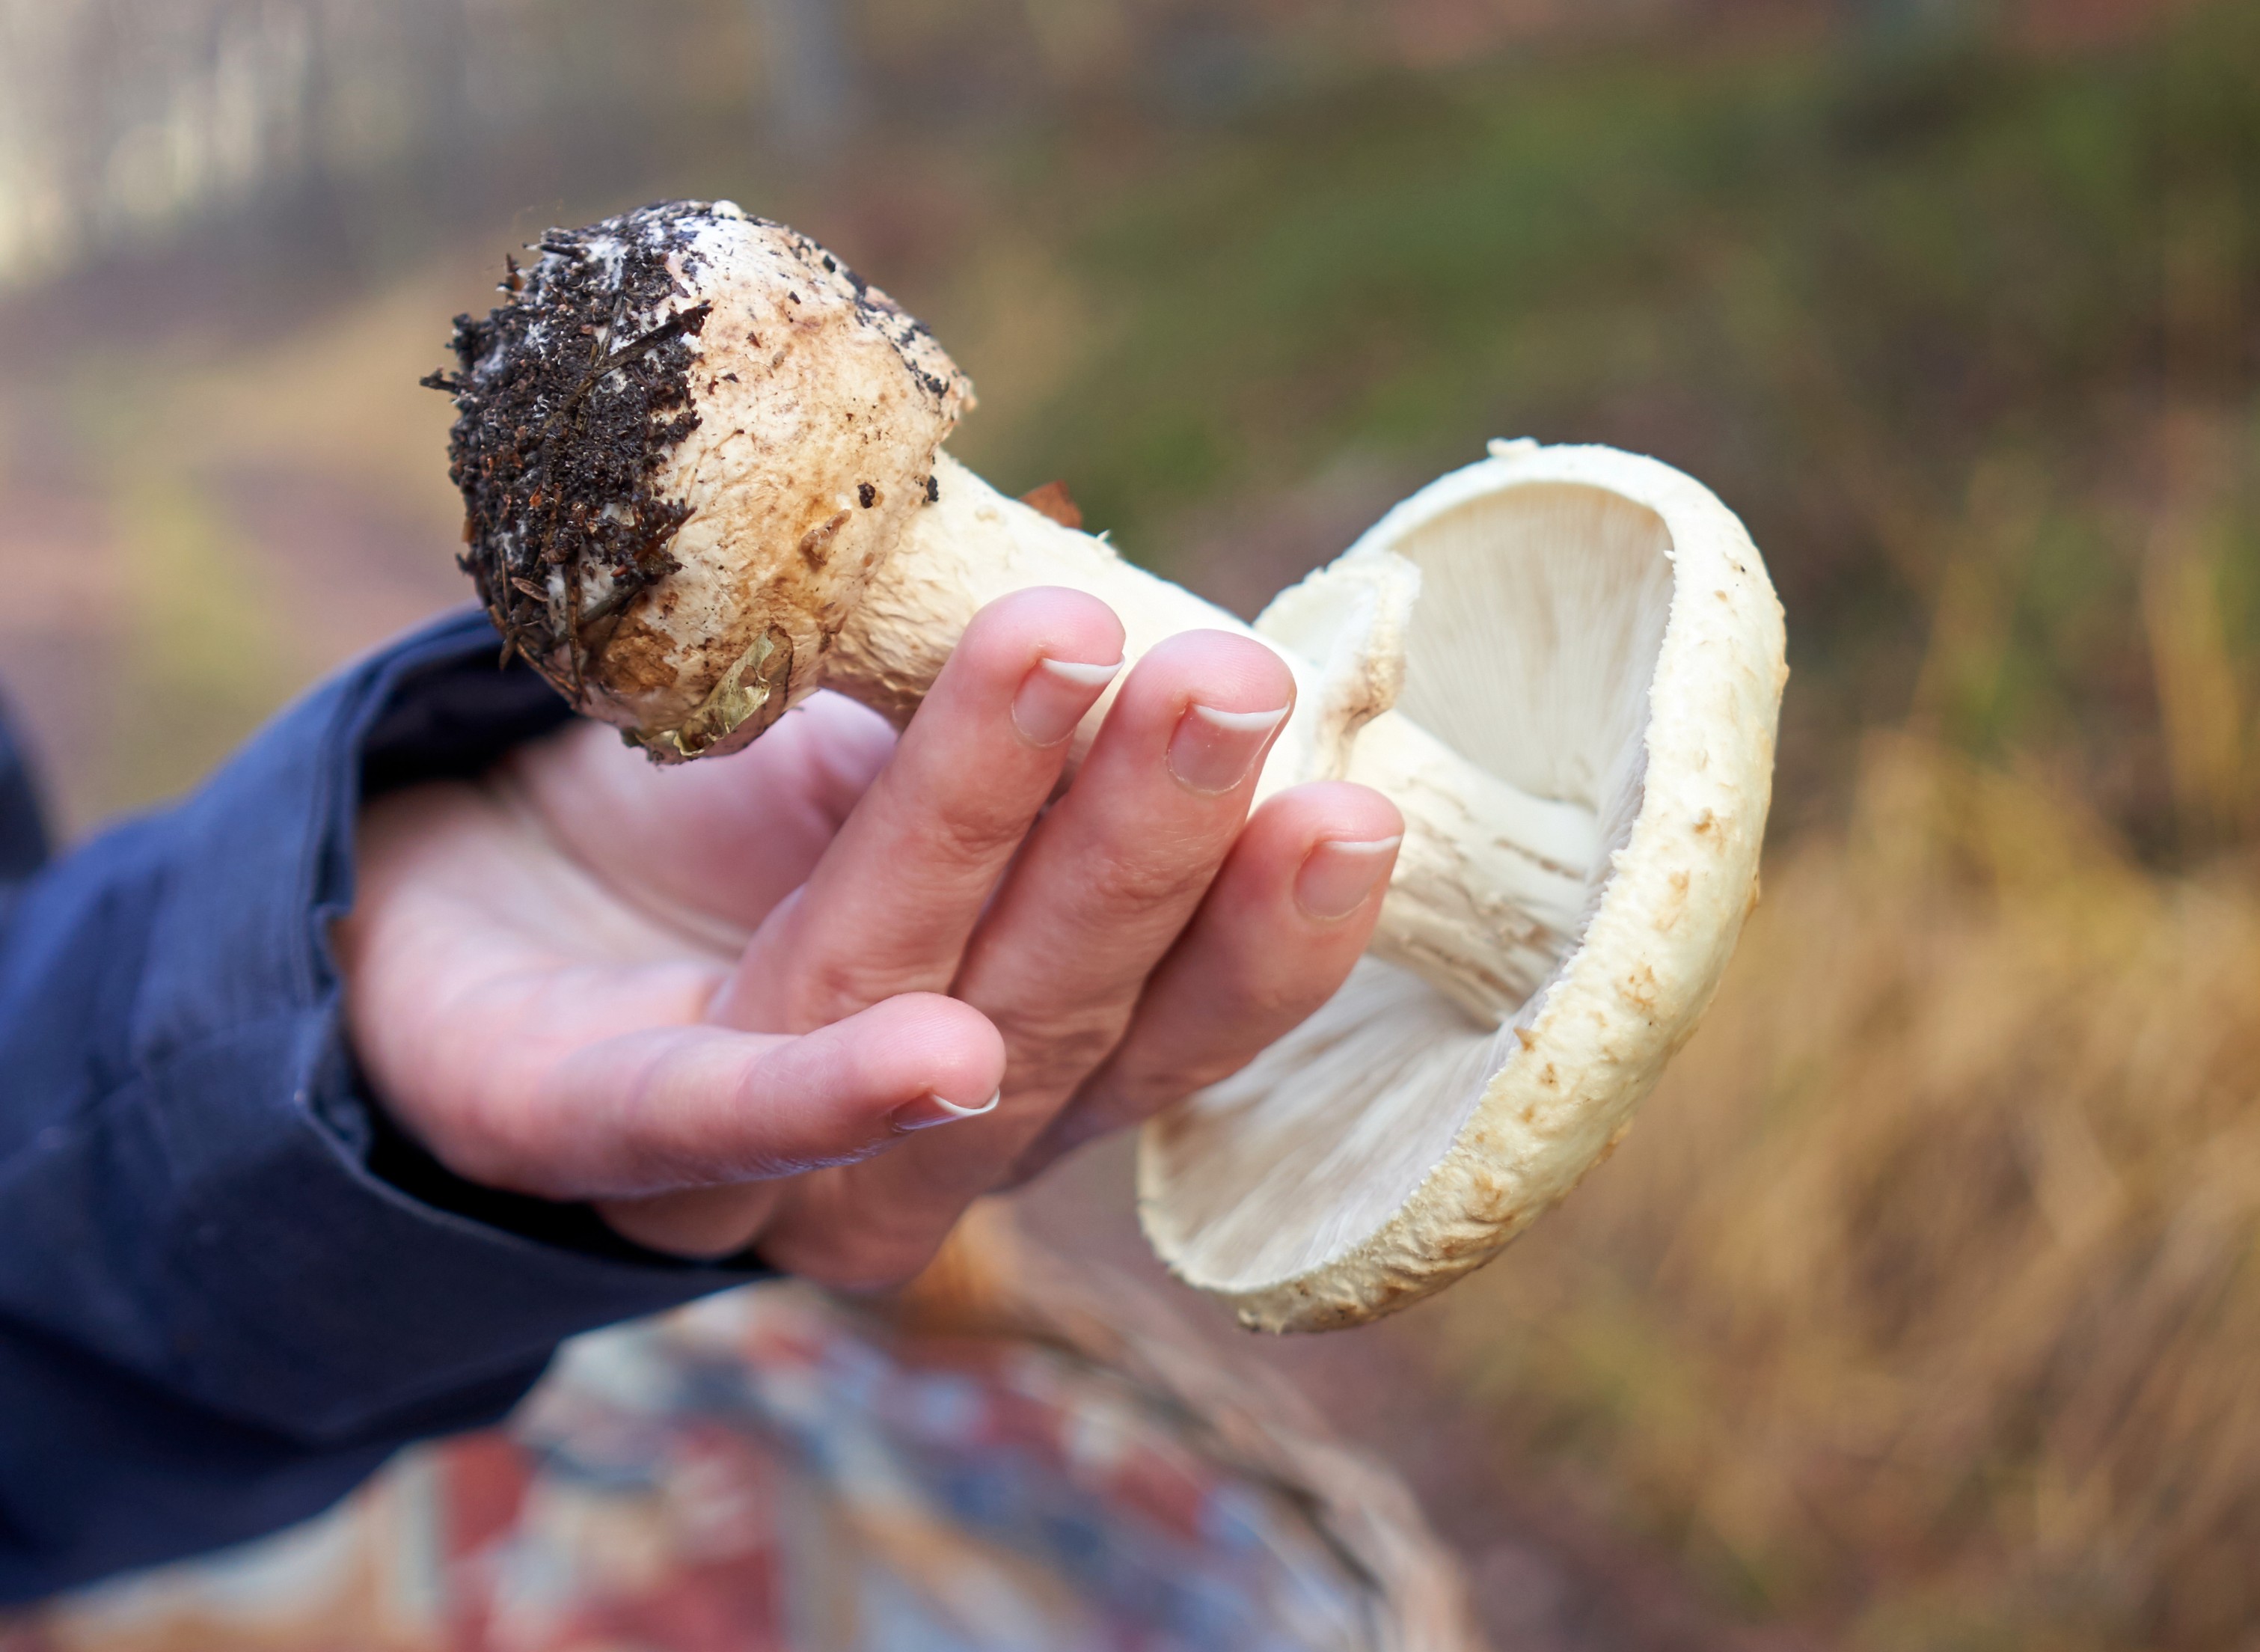 Attention à ne pas confondre l'amanite phalloïde, très toxique, avec d'autres champignons comestibles lors d'une cueillette. © Saimanfoto, Adobe Stock